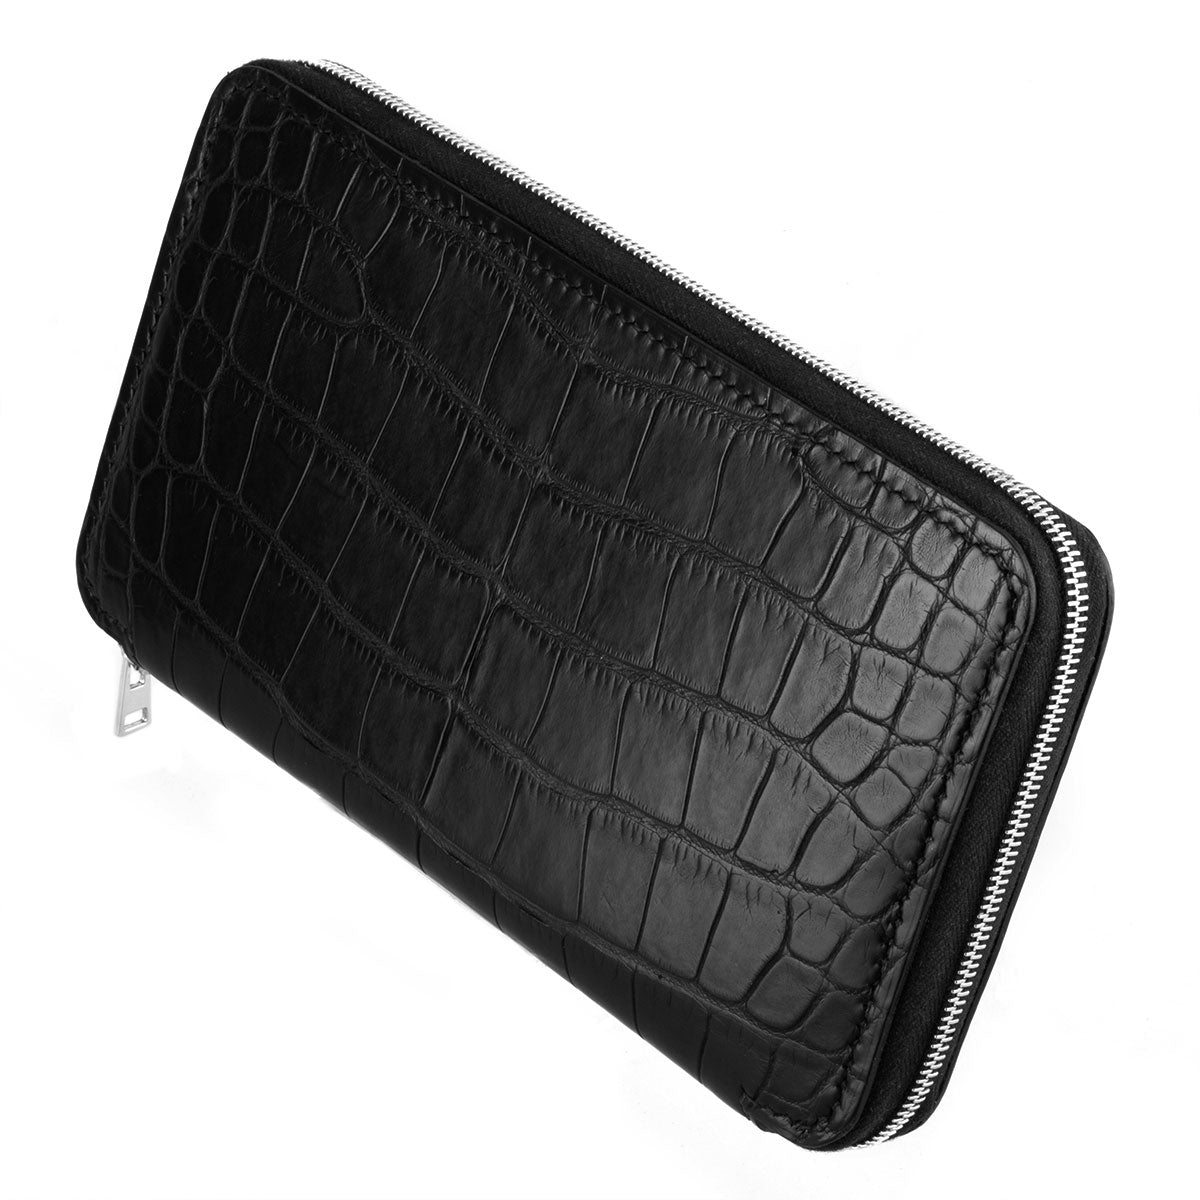 Porte-Feuille zippé « Platinum » - Alligator - watch band leather strap - ABP Concept -